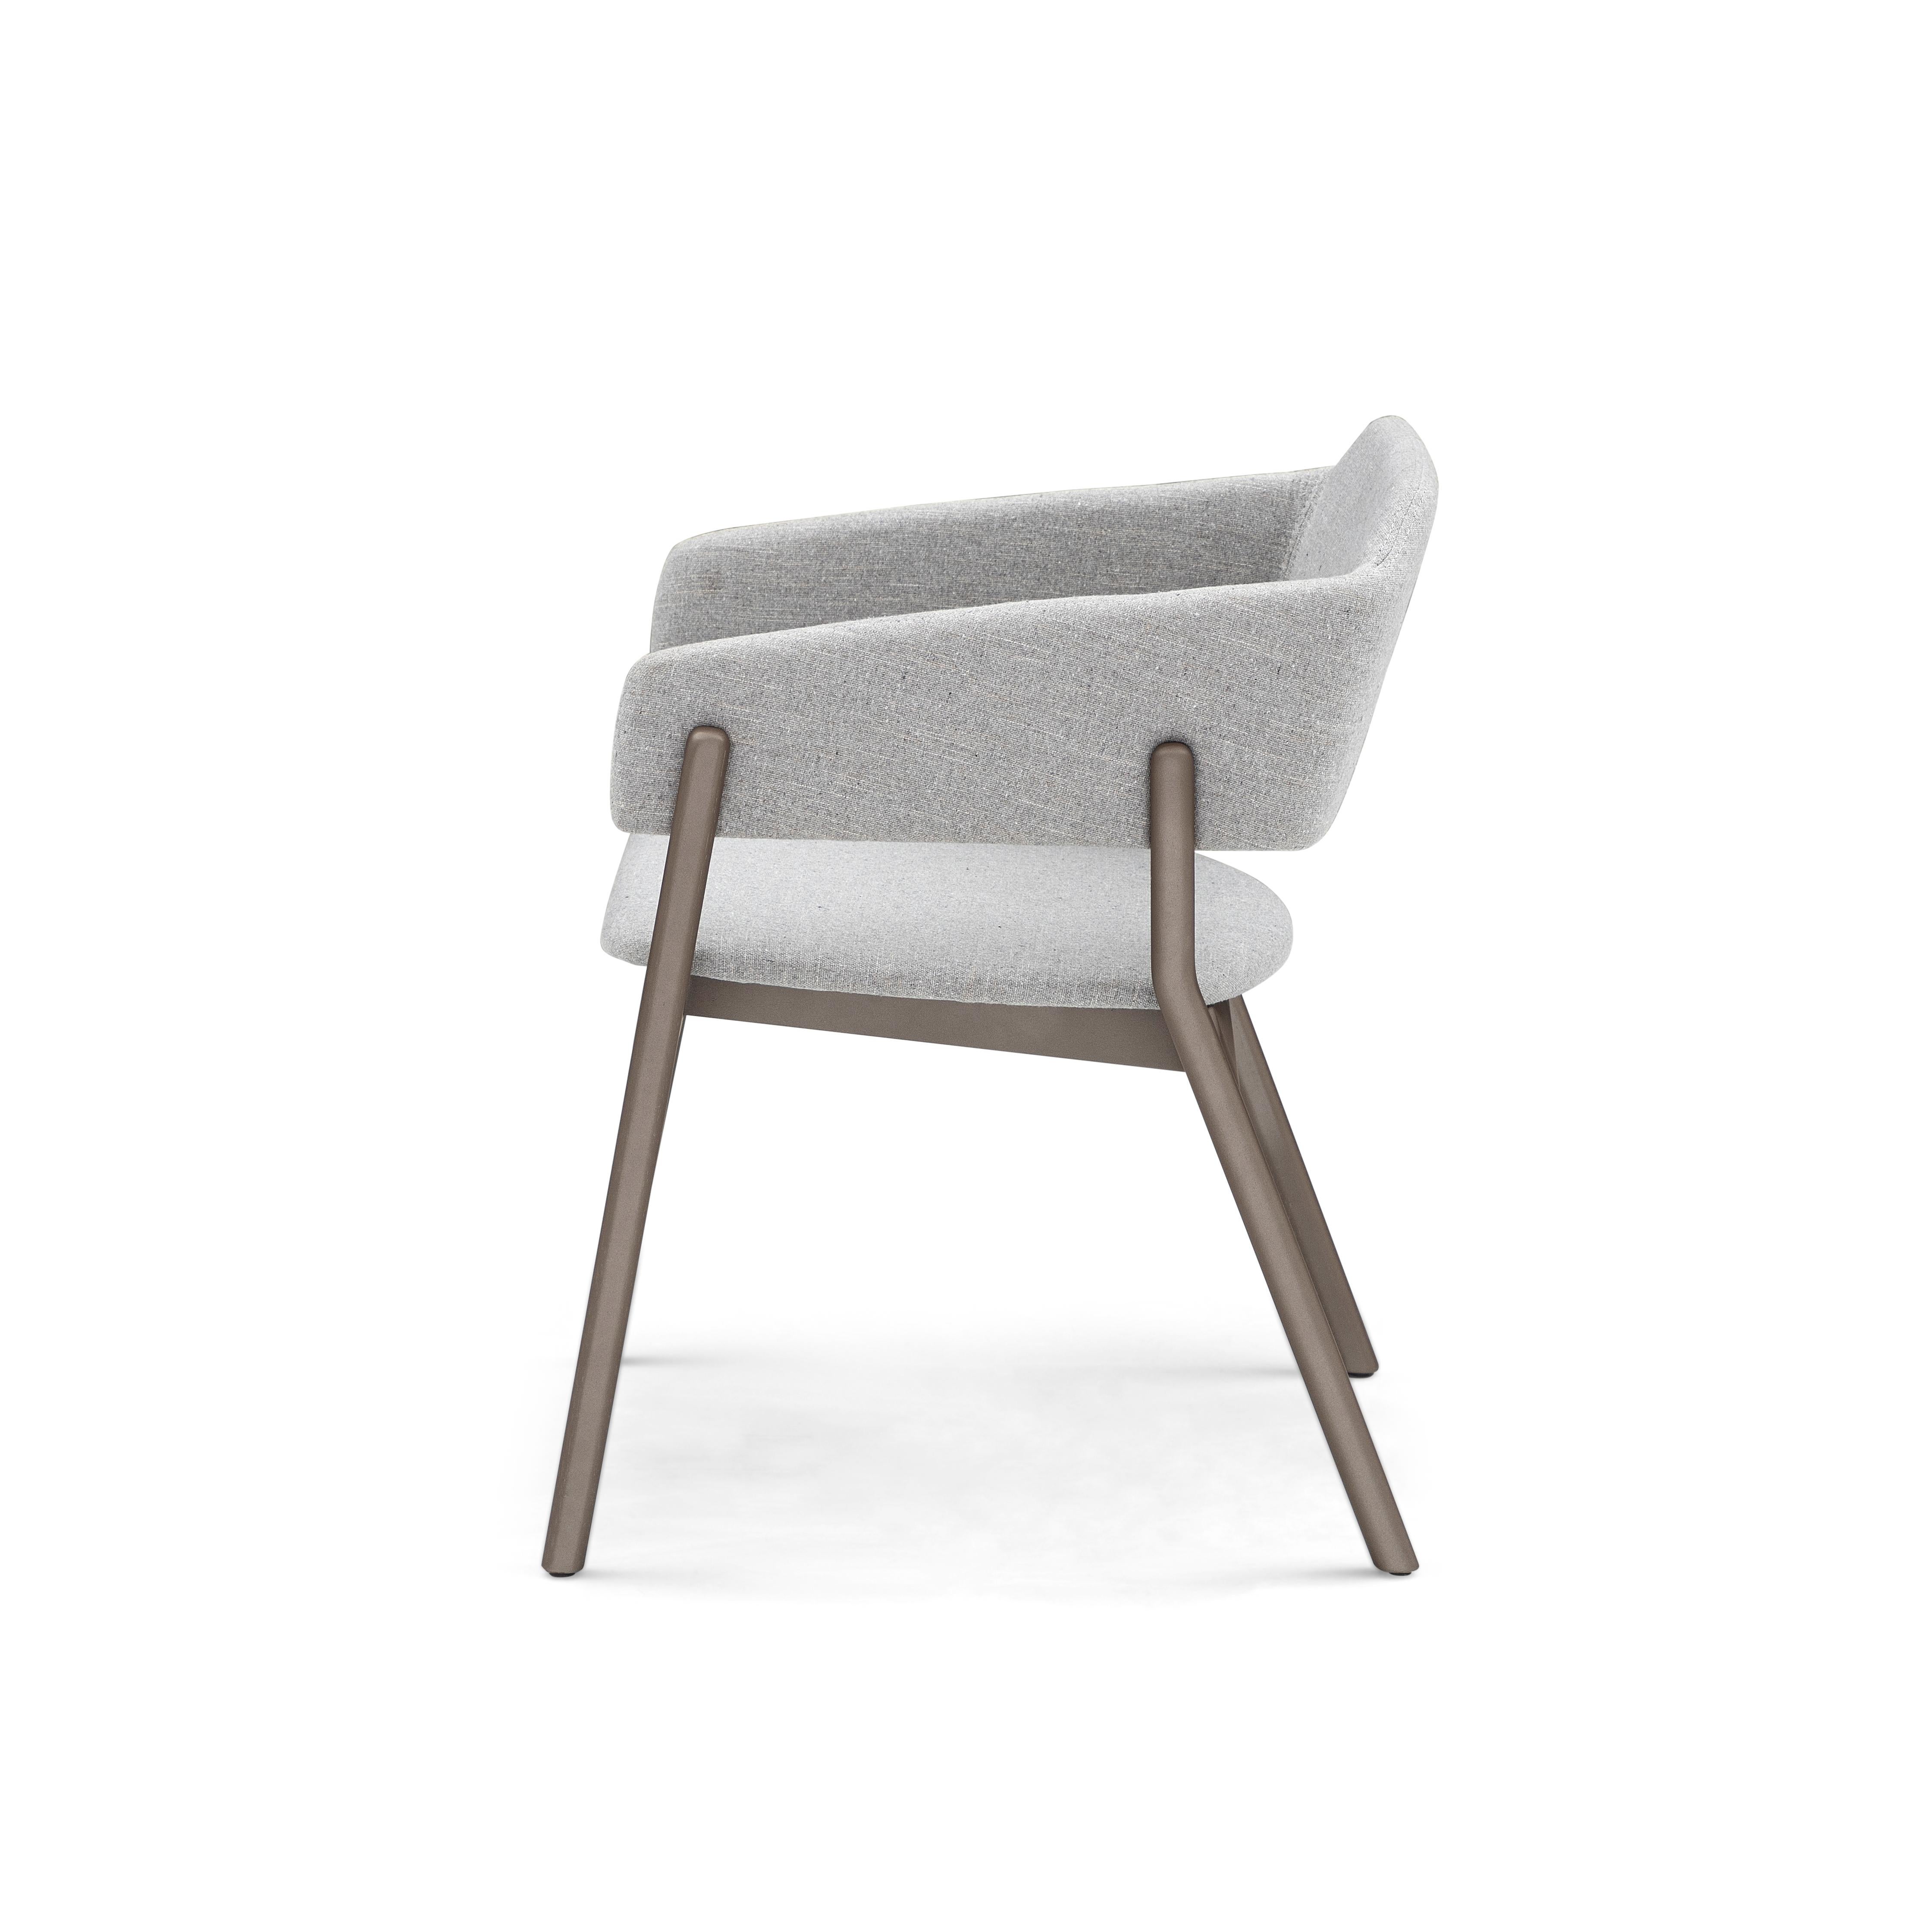 Unser Uultis-Team hat diesen schönen Stuzi-Esszimmerstuhl entworfen, der Ihren schönen Esszimmertisch mit einem schönen grauen Stoff und einer schokoladenfarbenen oder braunen Holzausführung schmückt. Dieser Stuhl hat ein wunderschönes, einfaches,